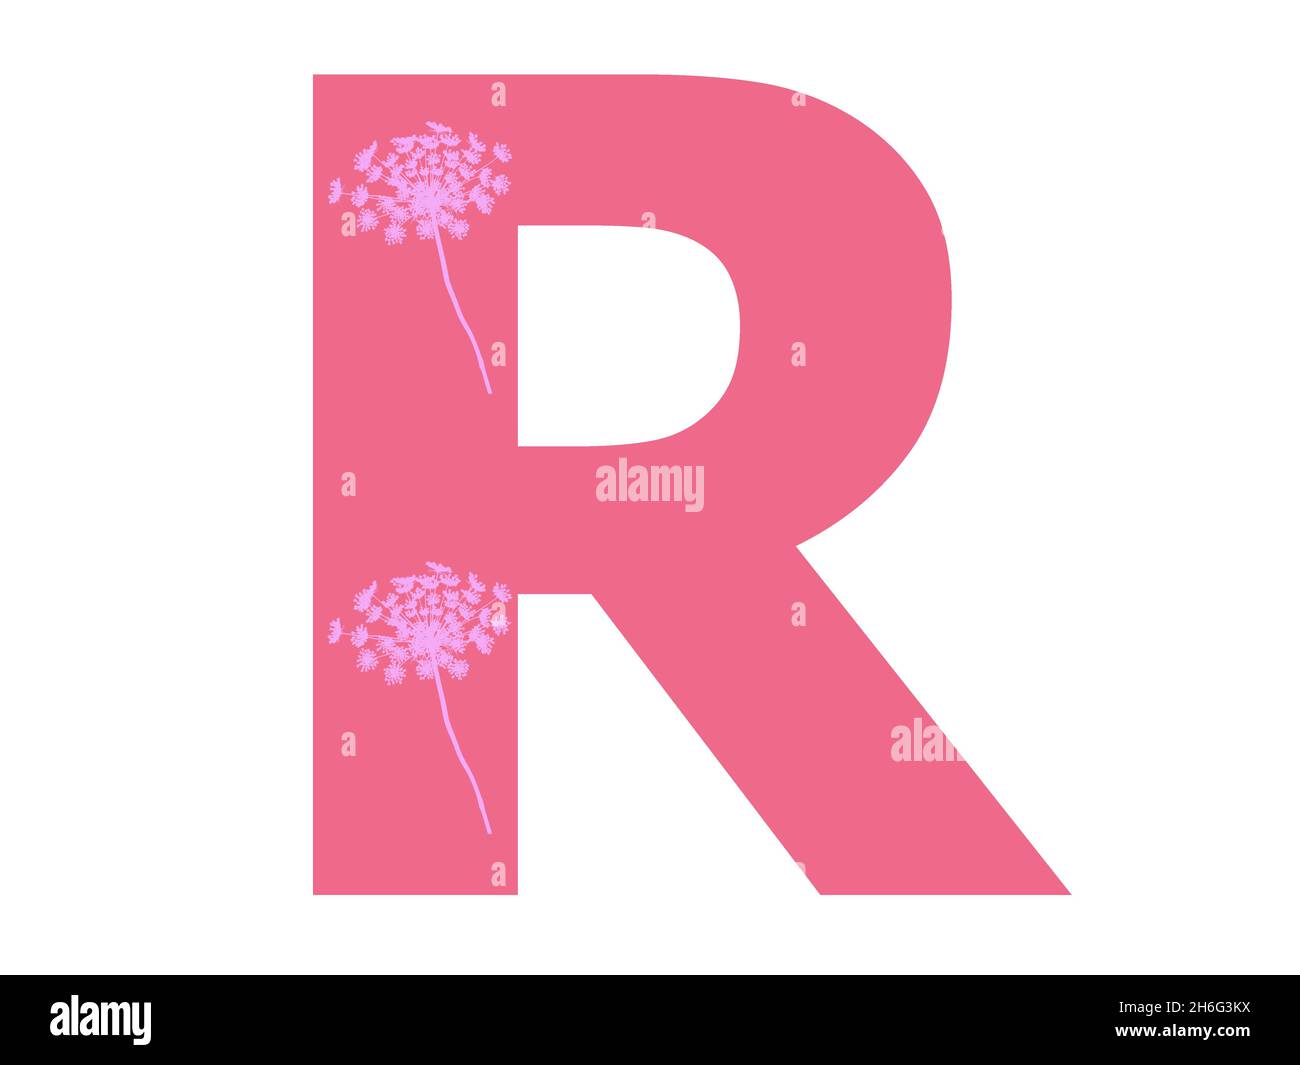 Lettera R dell'alfabeto realizzata con una silhouette di fiori rosa su sfondo rosa scuro, la lettera è isolata su sfondo bianco Foto Stock